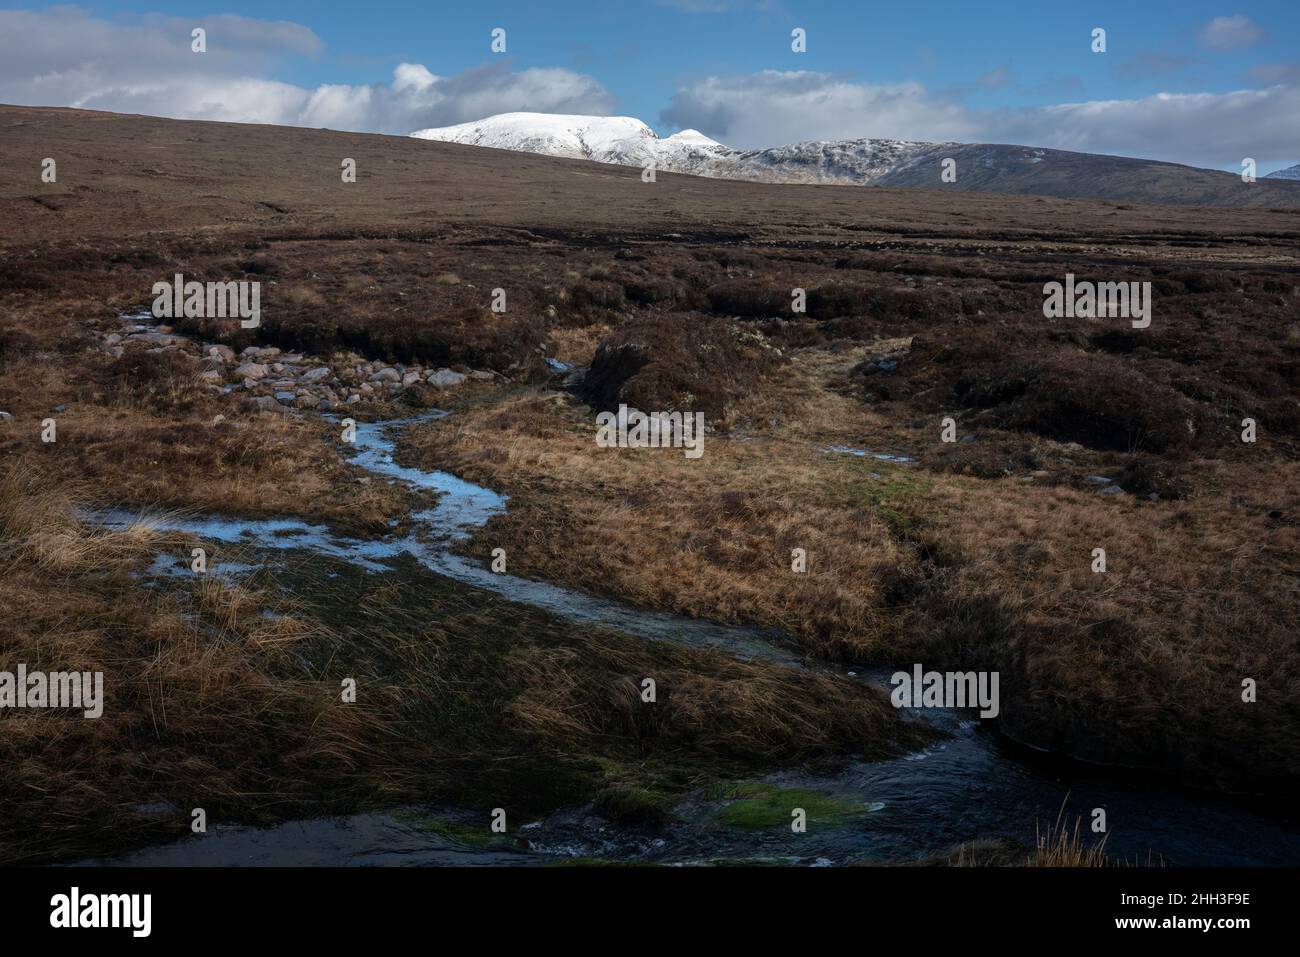 Un marécage humide en bordure du parc national Wild Nephin en Irlande.Il est situé sur la côte ouest dans le nord-ouest de Mayo. Banque D'Images